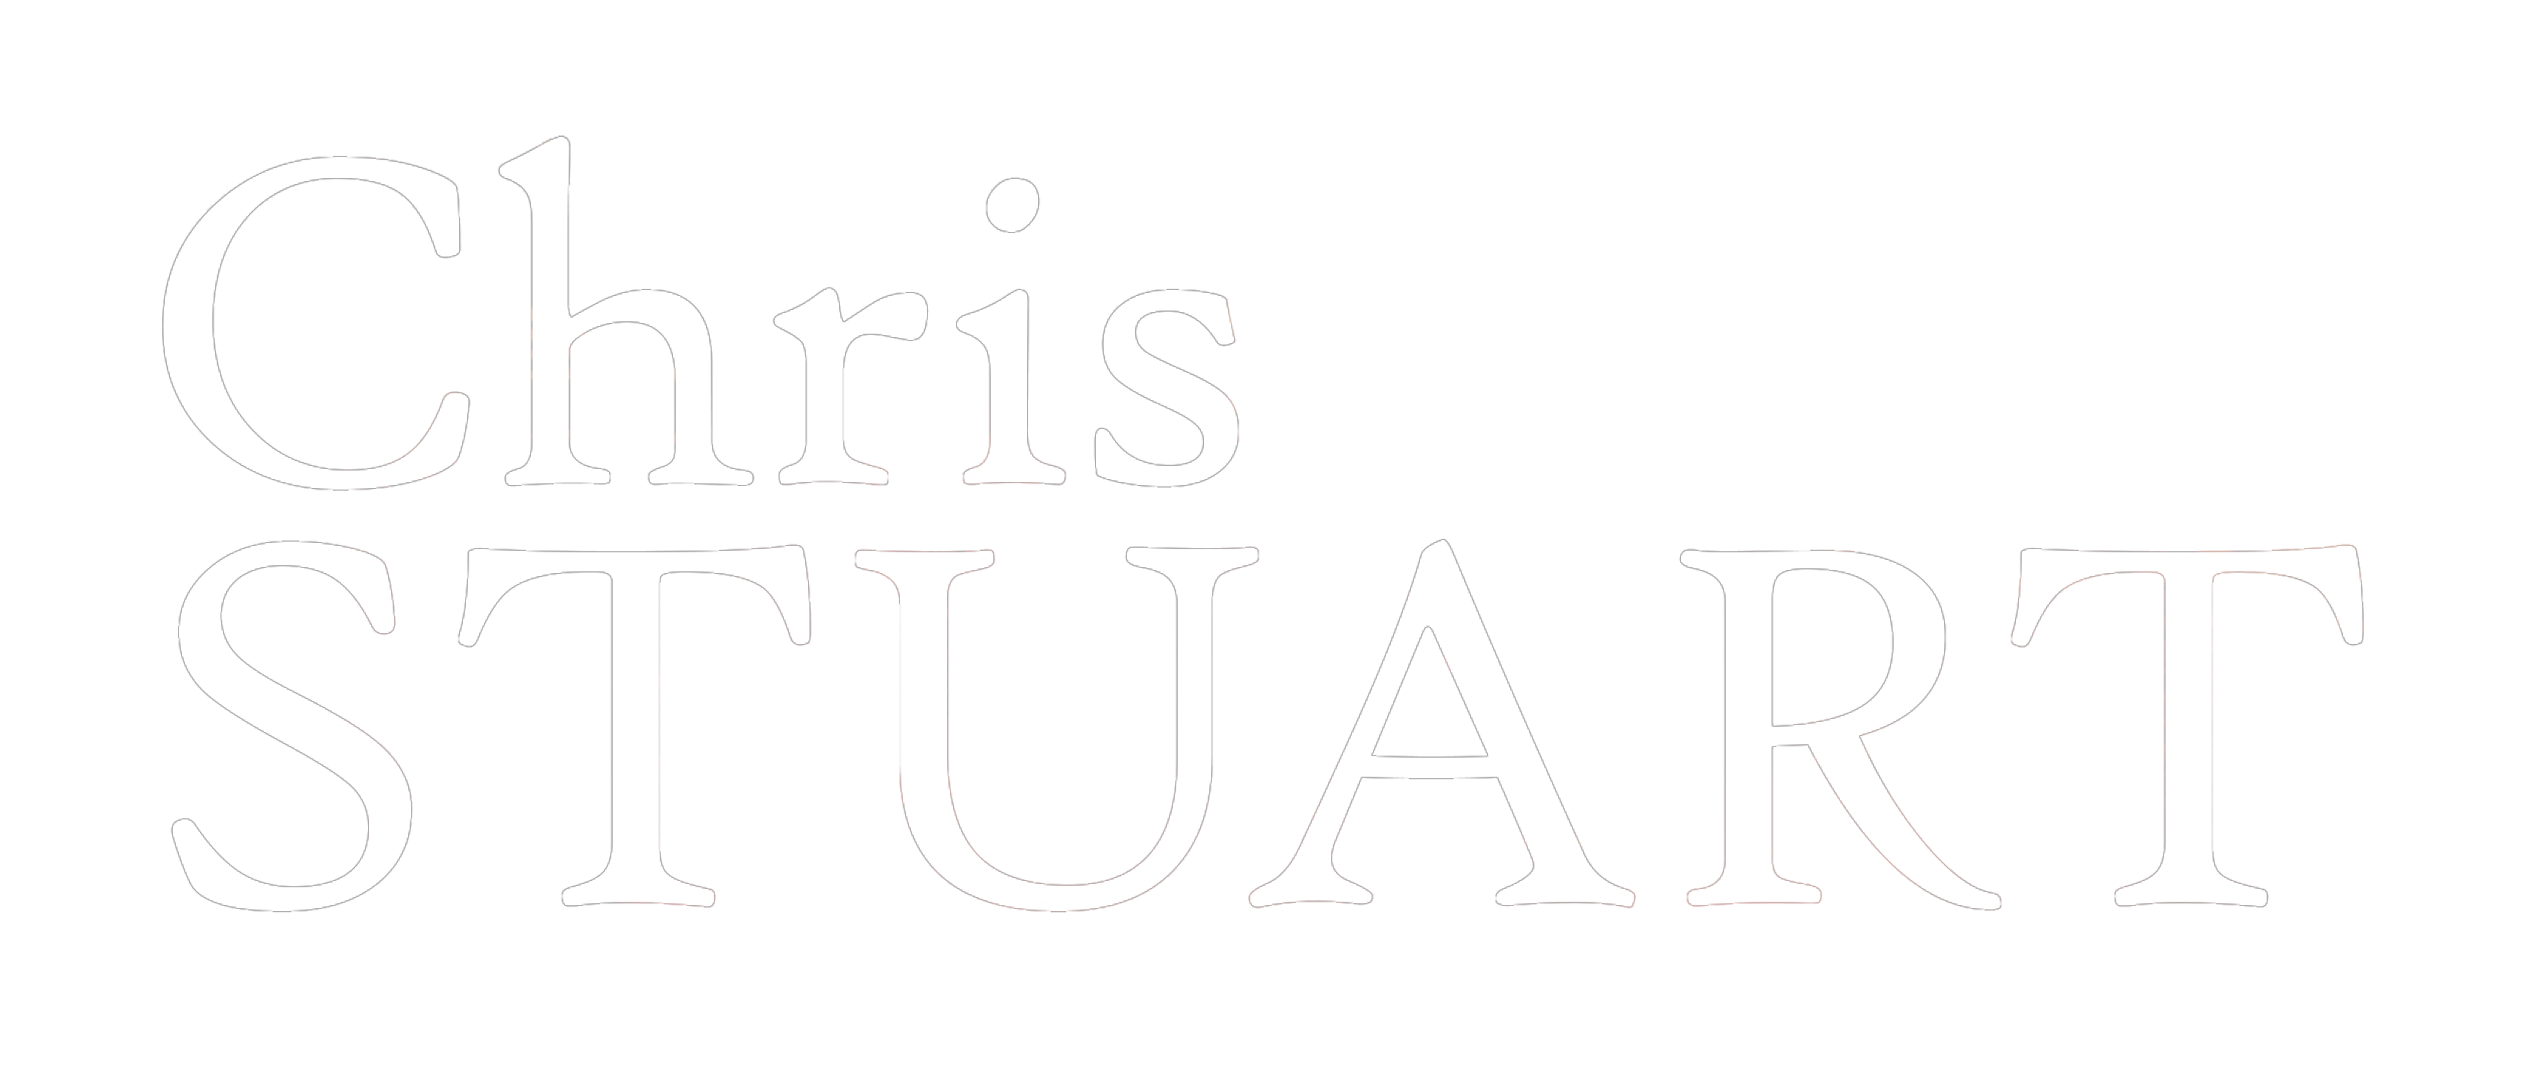 Chris Stuart